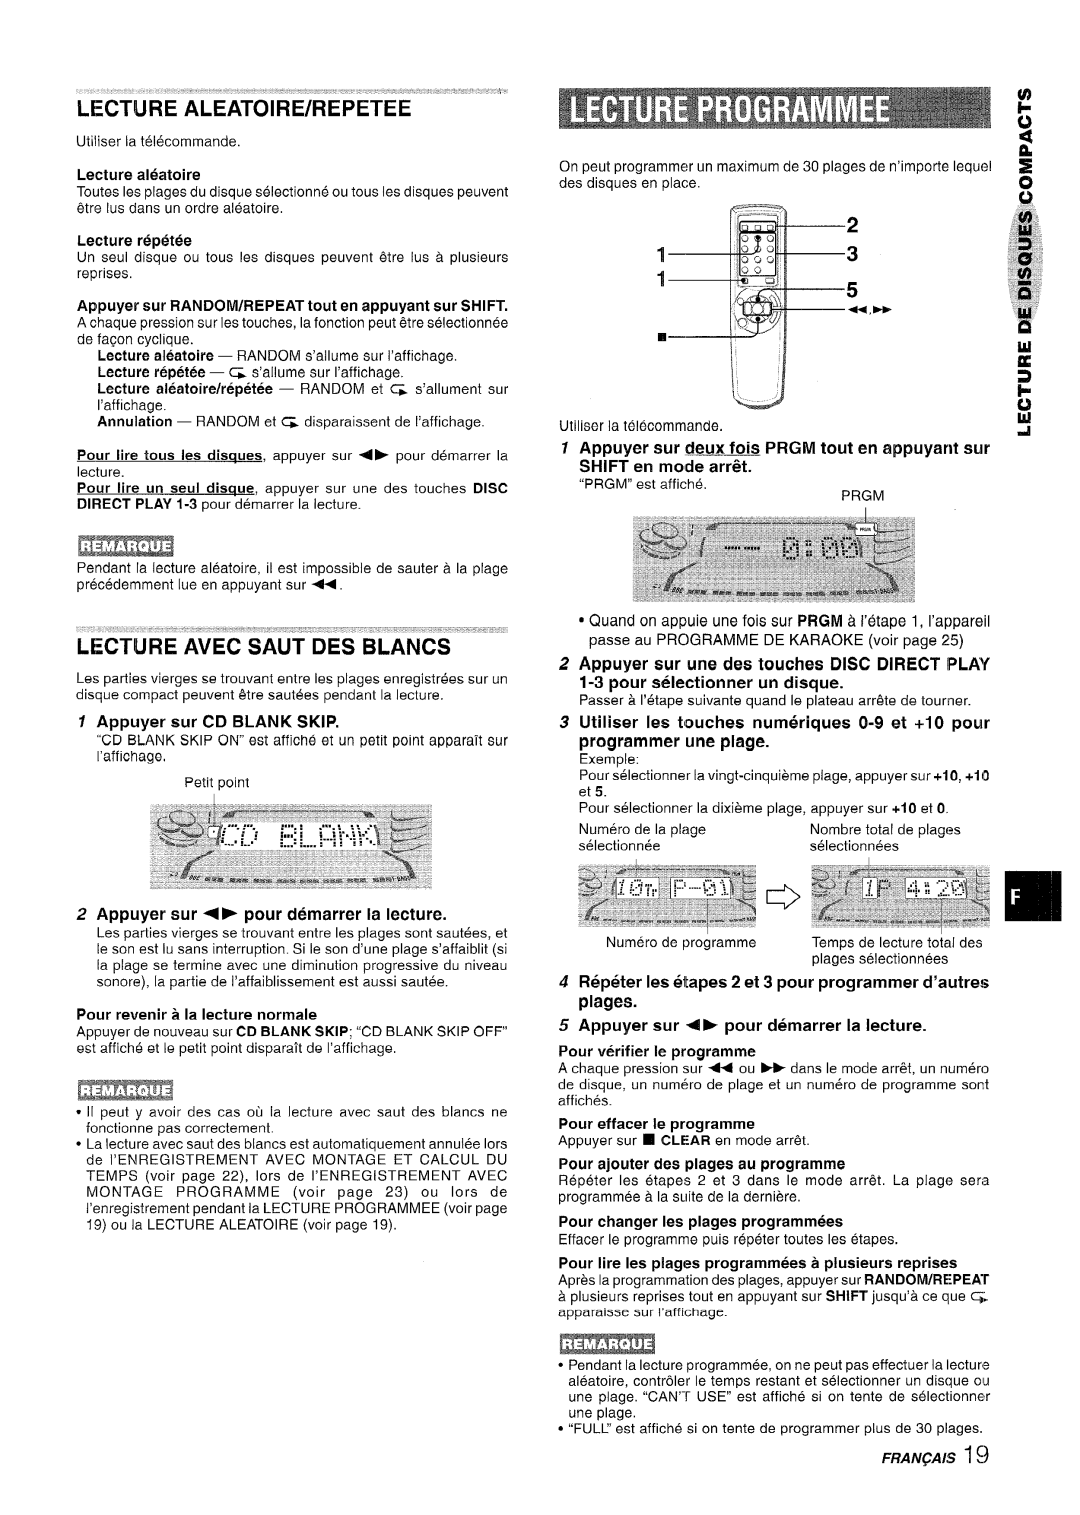 Sony NSX-A767 manual Lecture Aleatoire/Repetee, Lecture aleatoire, Appuyer sur CD BLANK SKIP, pour sdectionner un disque 